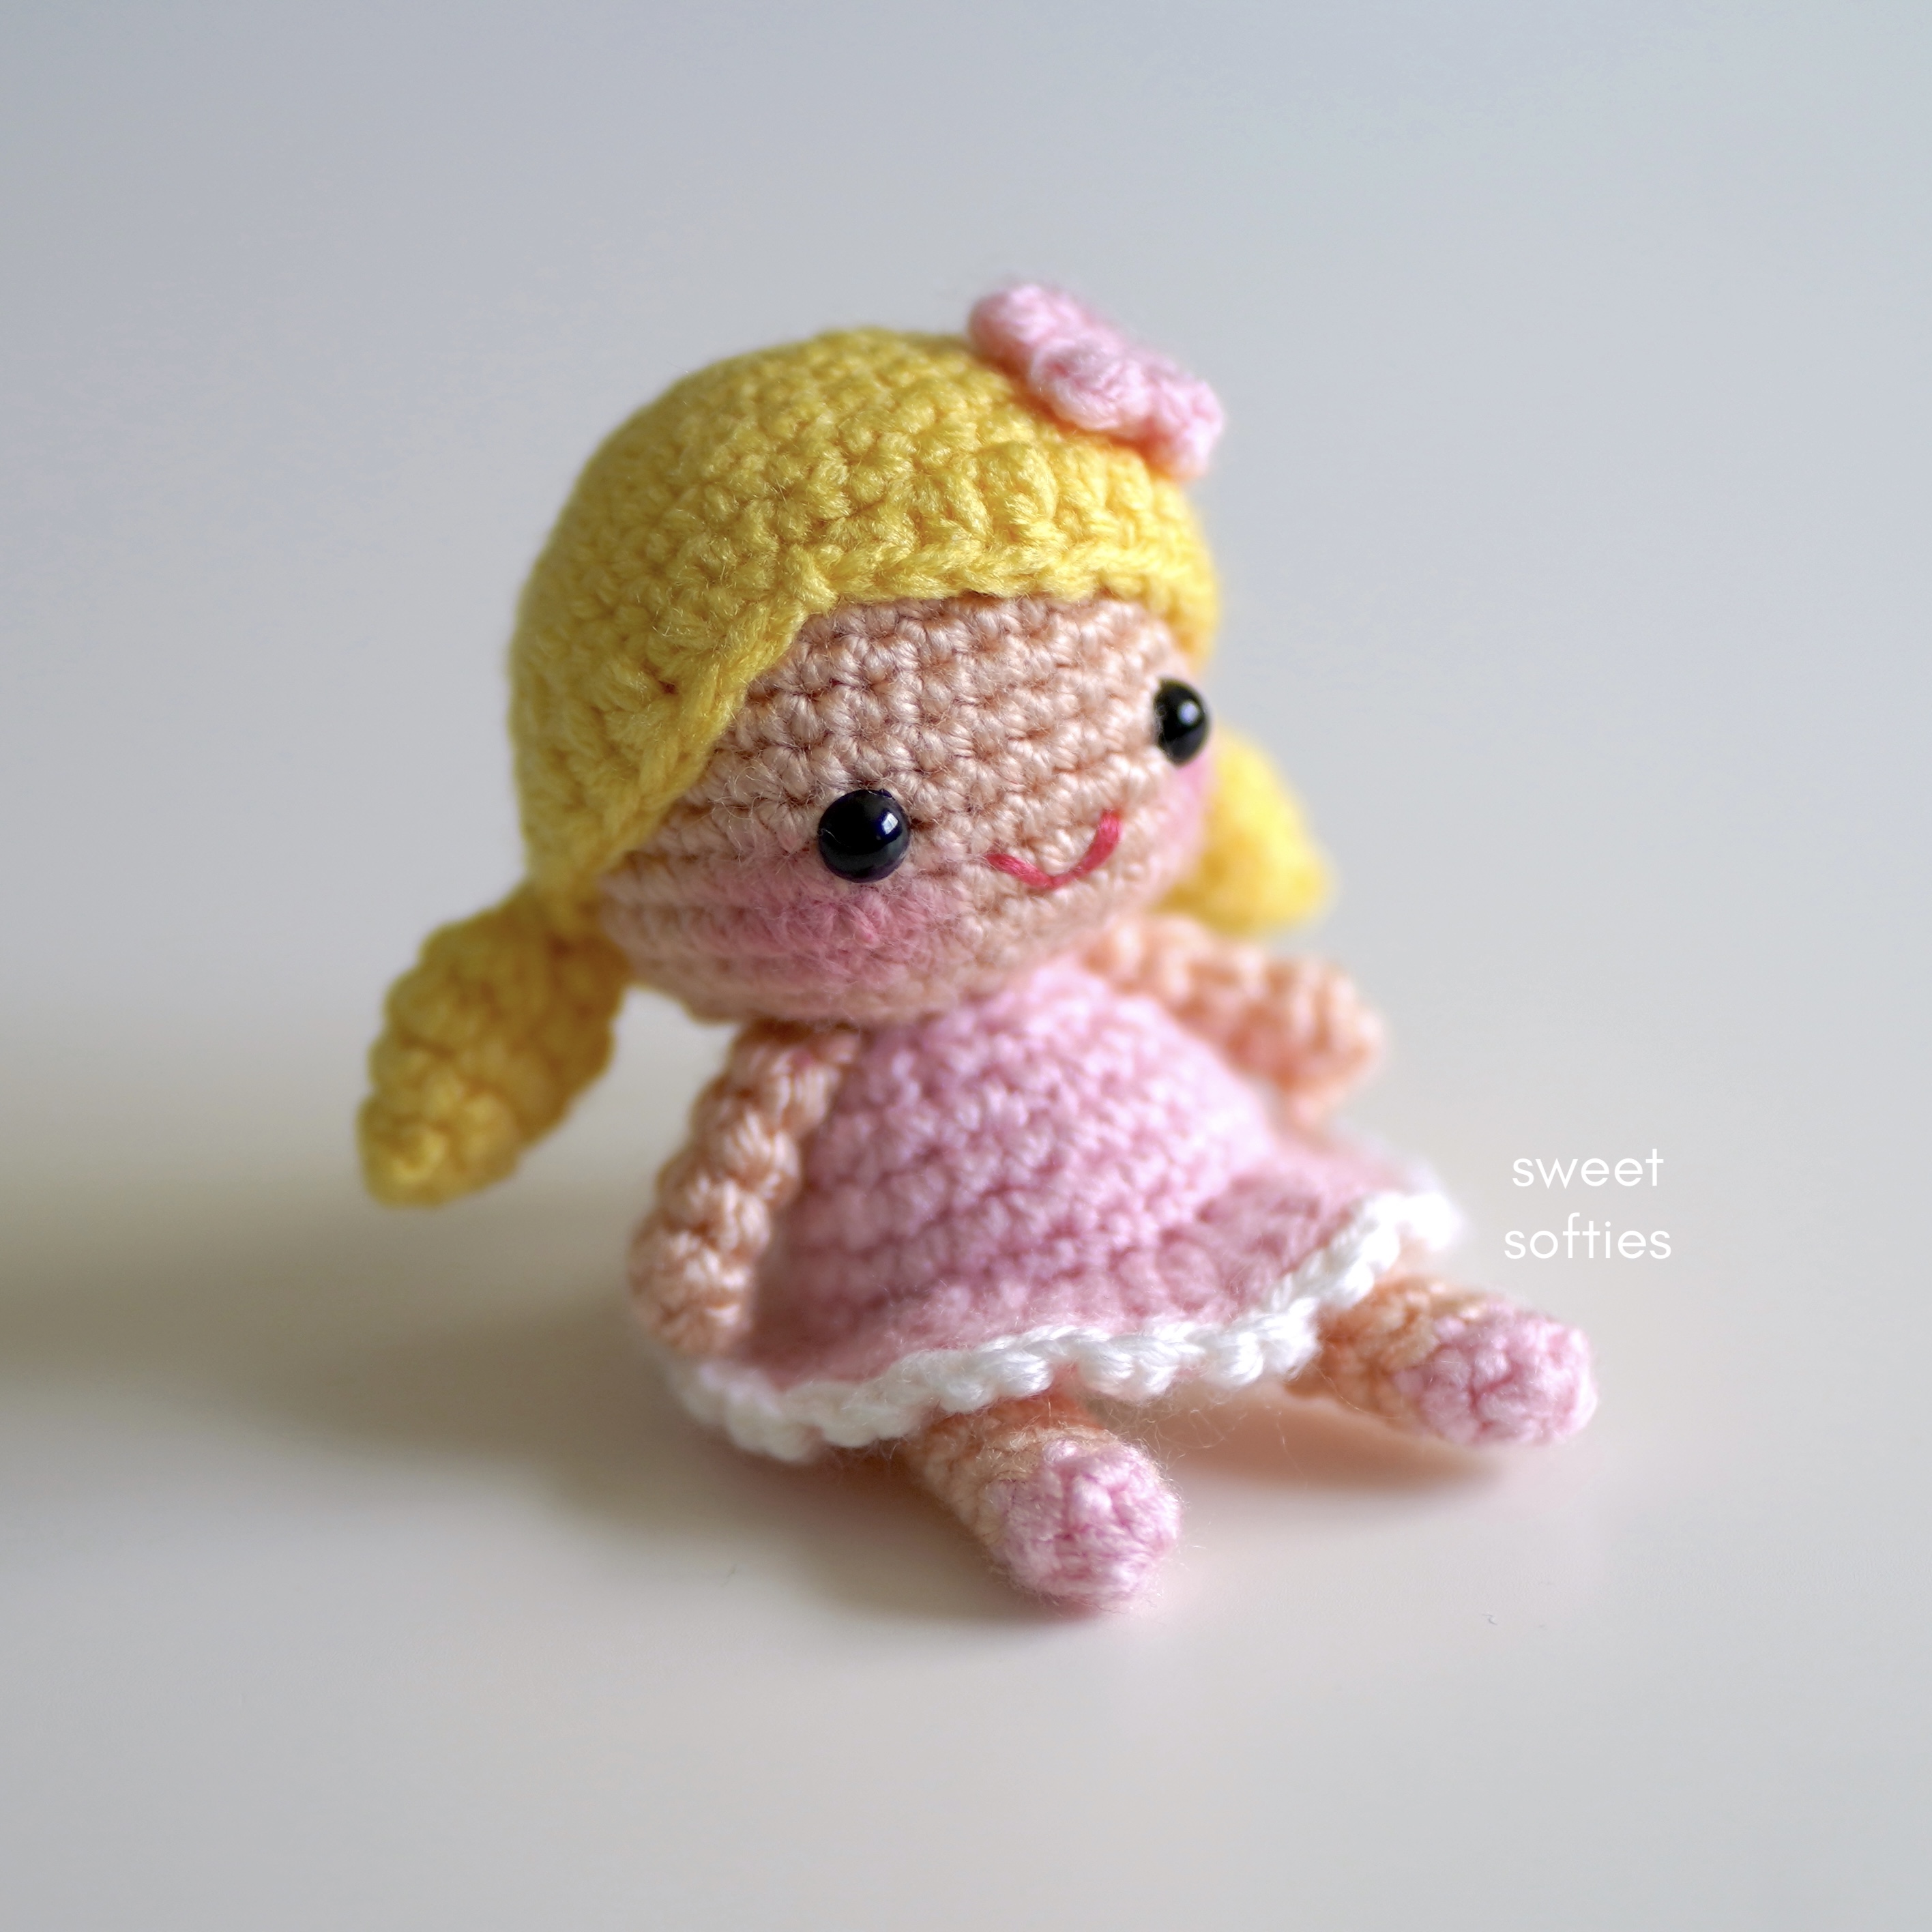 Little Lucy Doll · Free Amigurumi Crochet Pattern - Sweet Softies